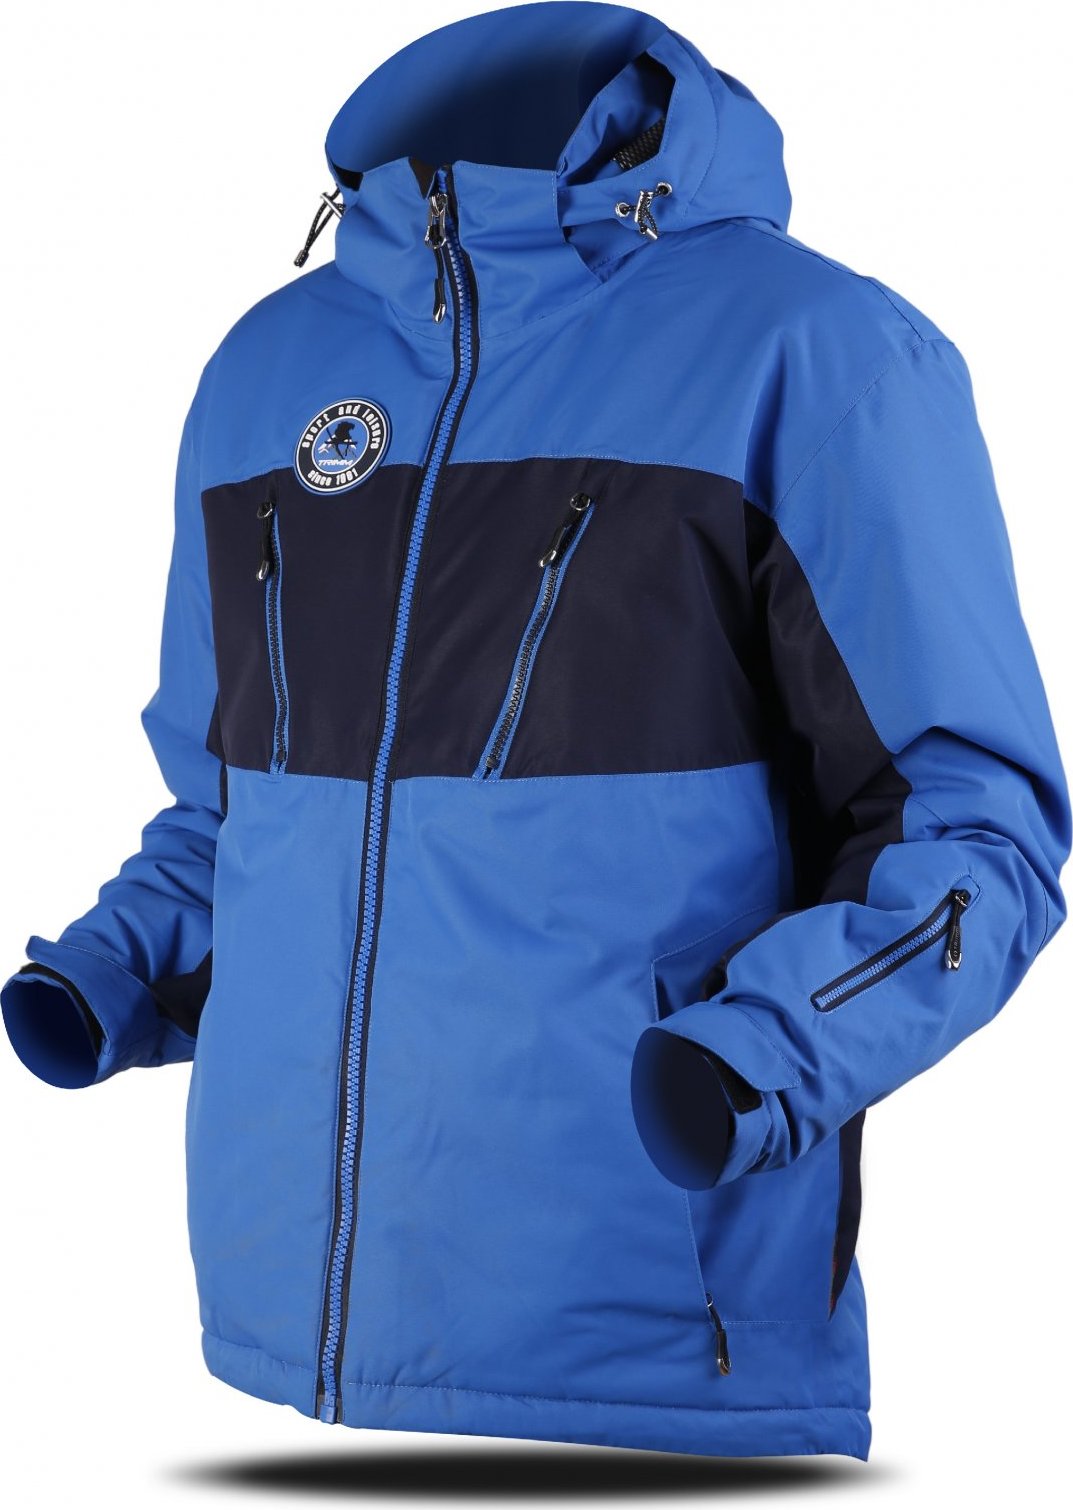 Pánská lyžařská bunda TRIMM Dynamit modrá Velikost: S, Barva: jeans blue/ navy